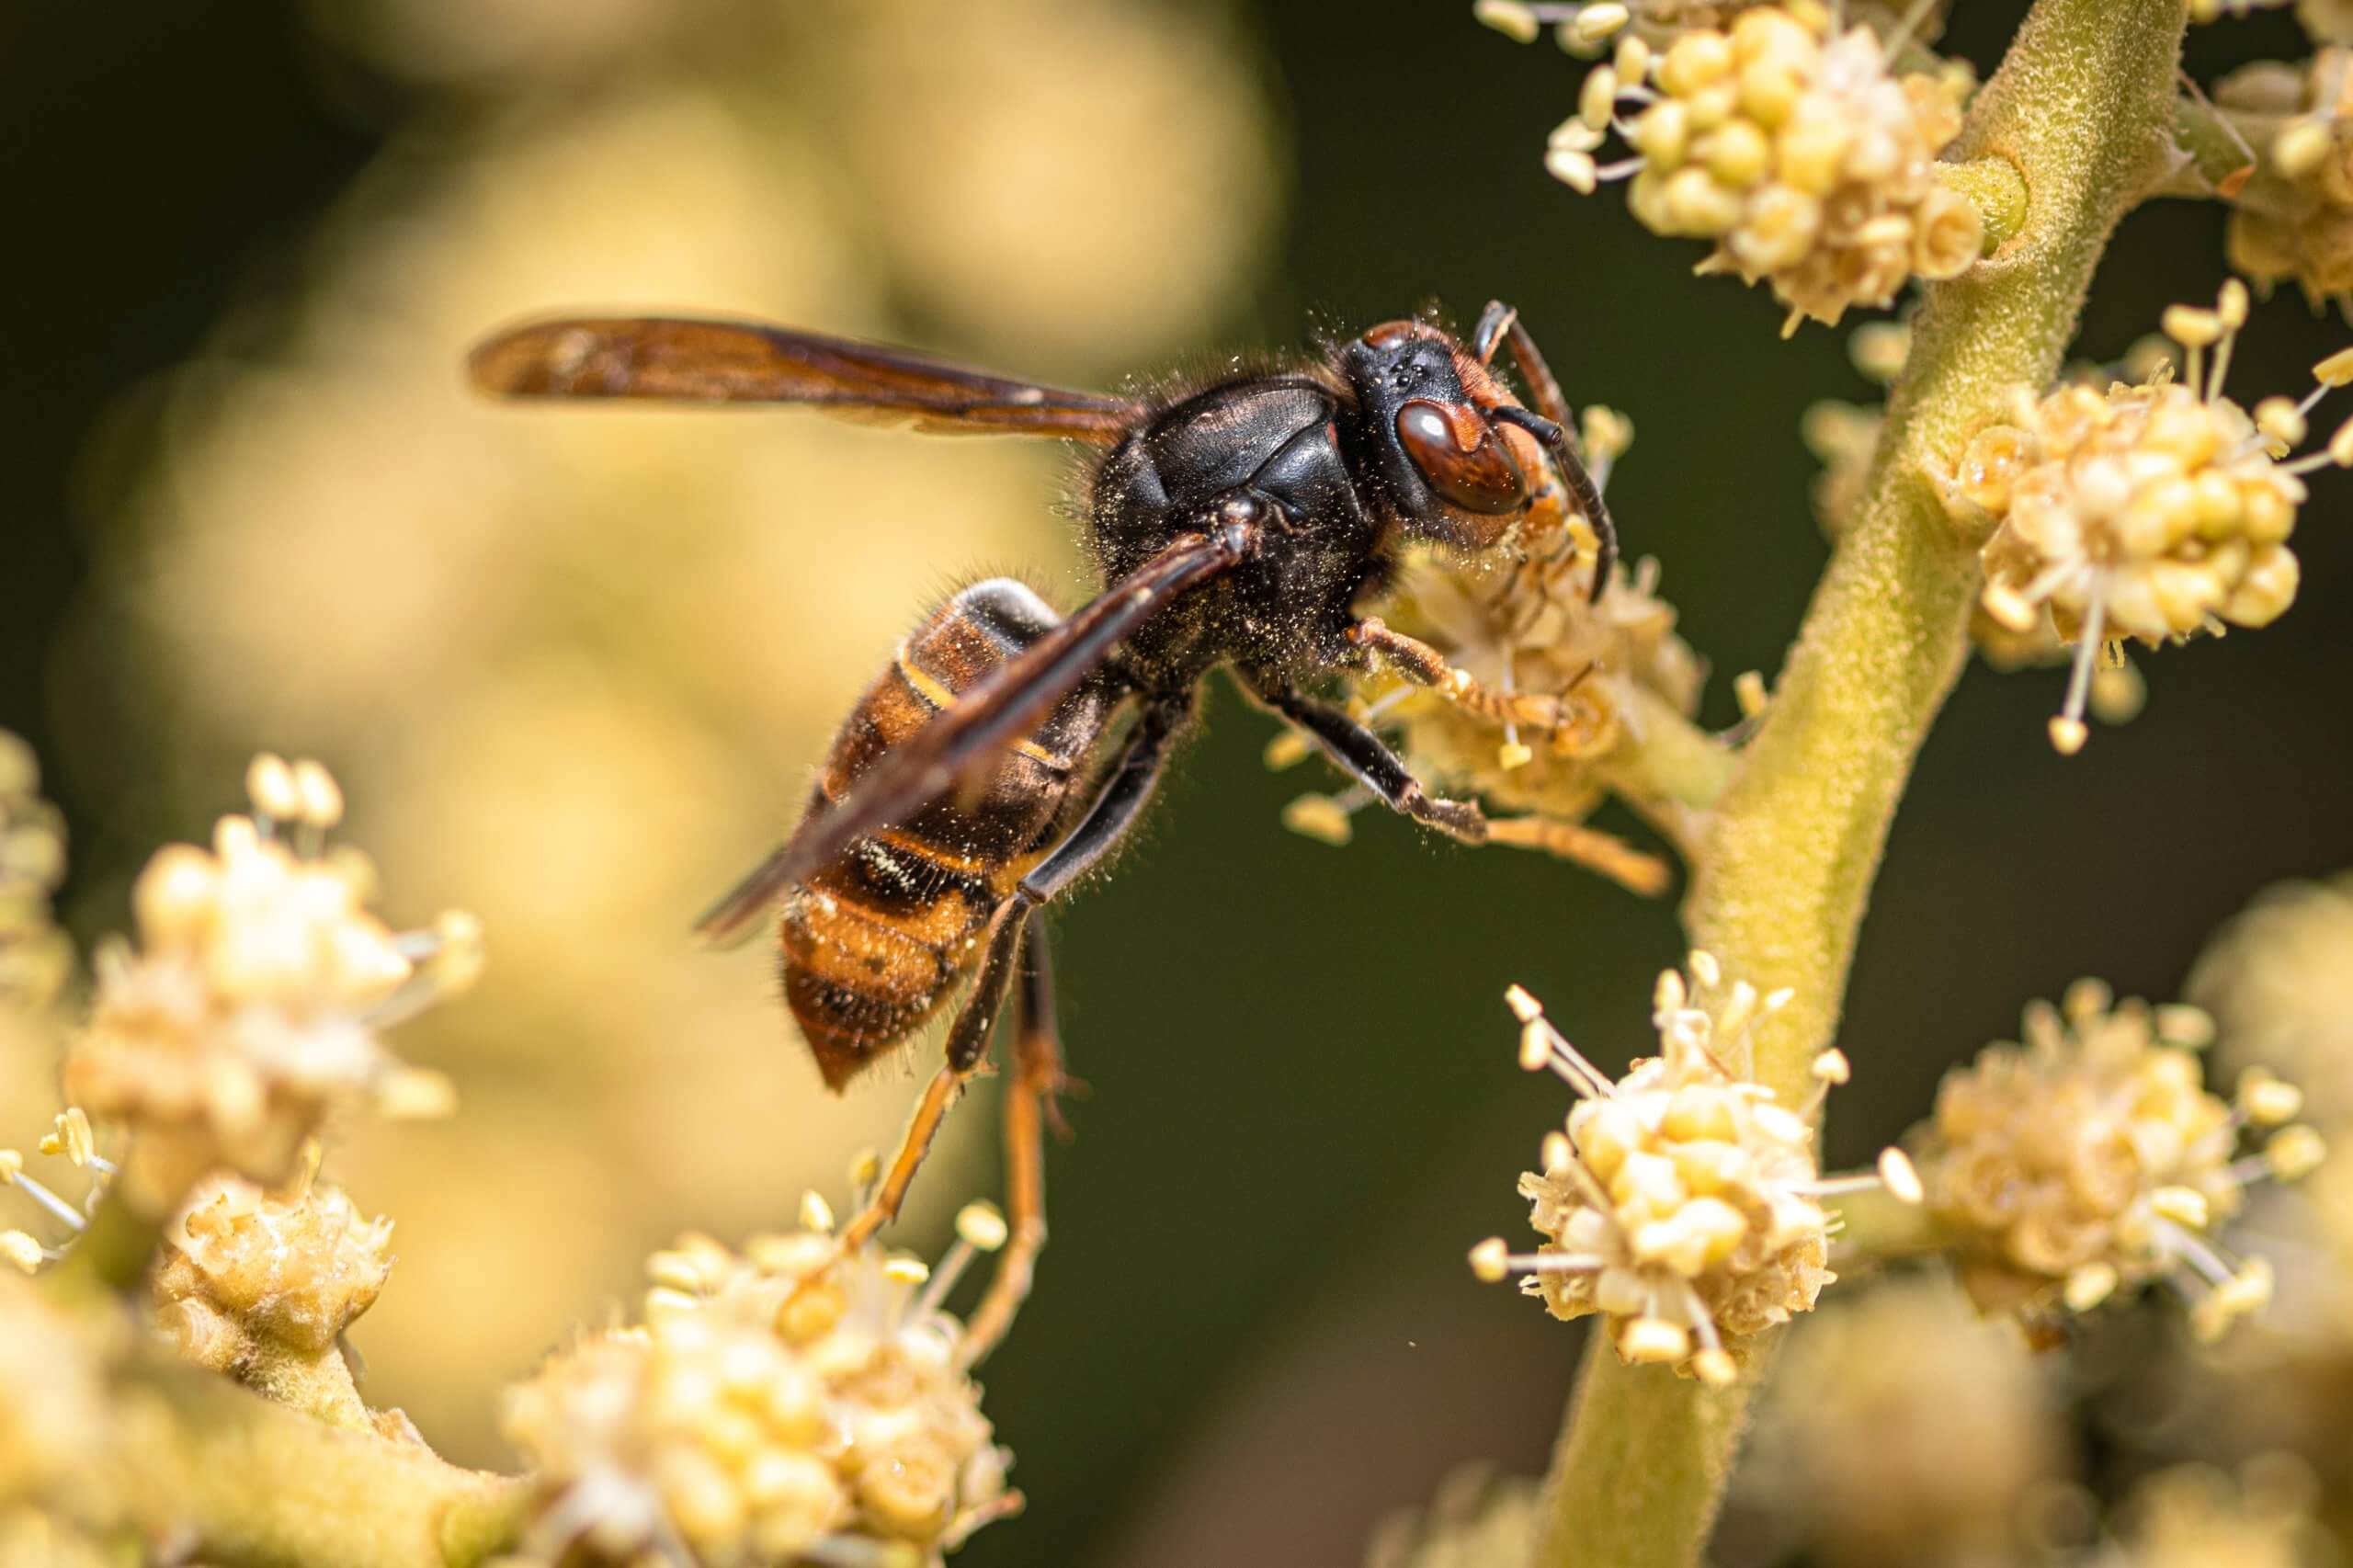 Aziatische hoornaar (Vespa velutina) herken je aan de zwarte kop, het grotendeels zwarte lijfje en de poten die van zwart naar lichtgeel gaan. 